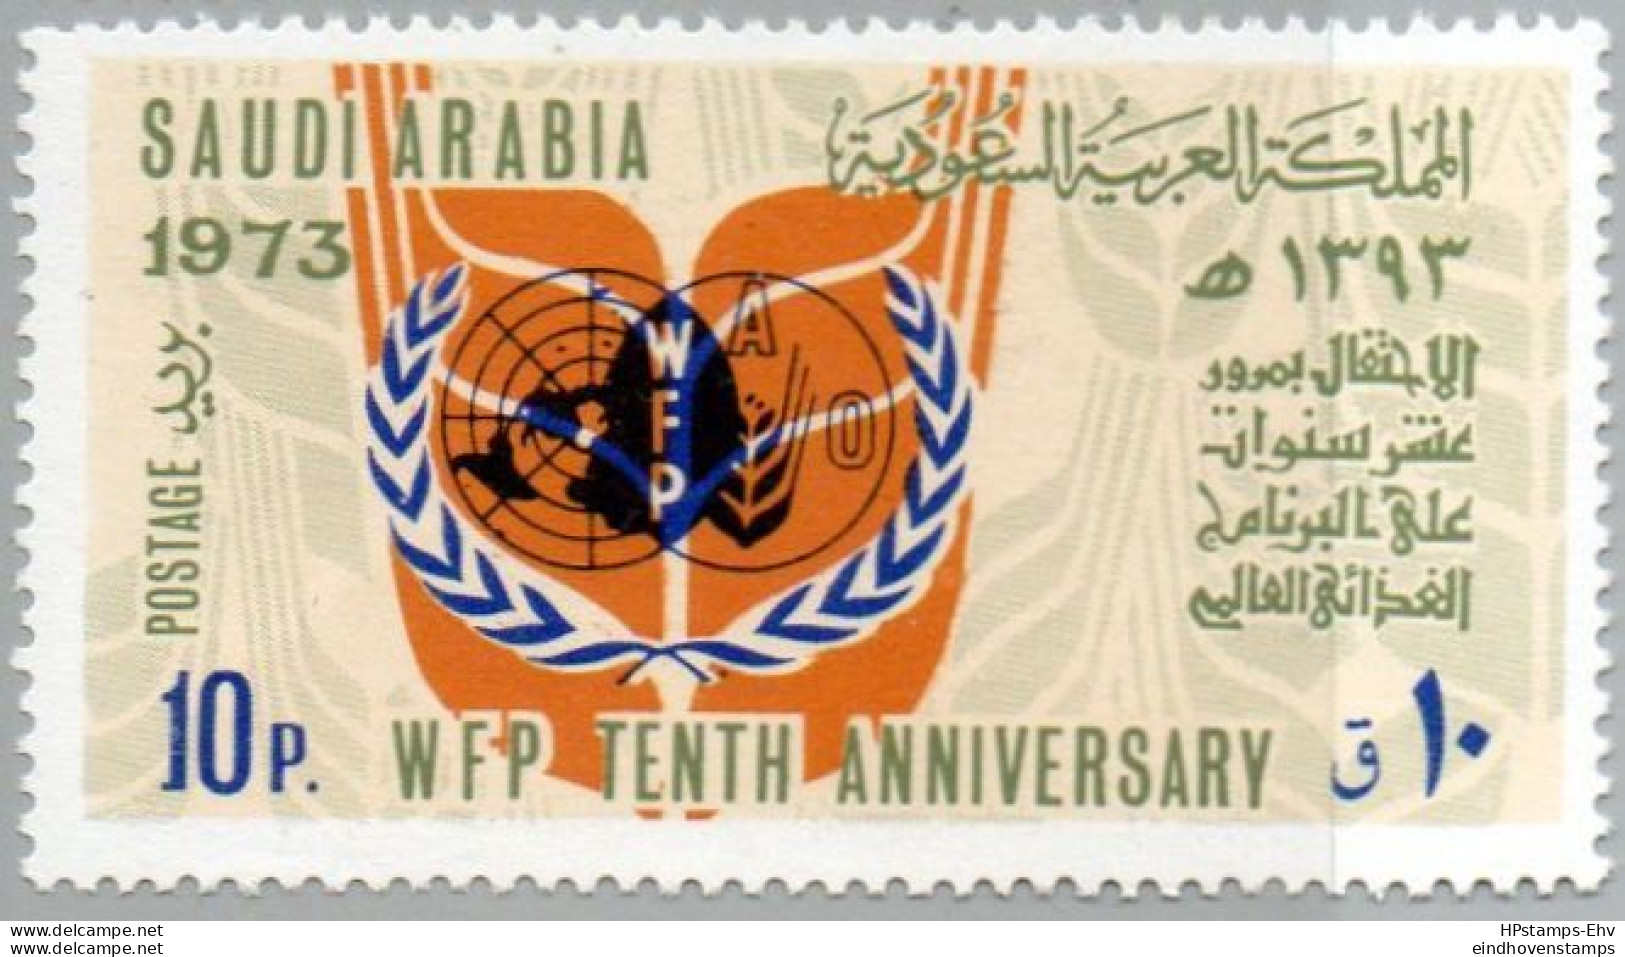 Saudi Arabia 1975 10 P World Food Programm 1 Value MNH 75-11.2 WAO - Tegen De Honger